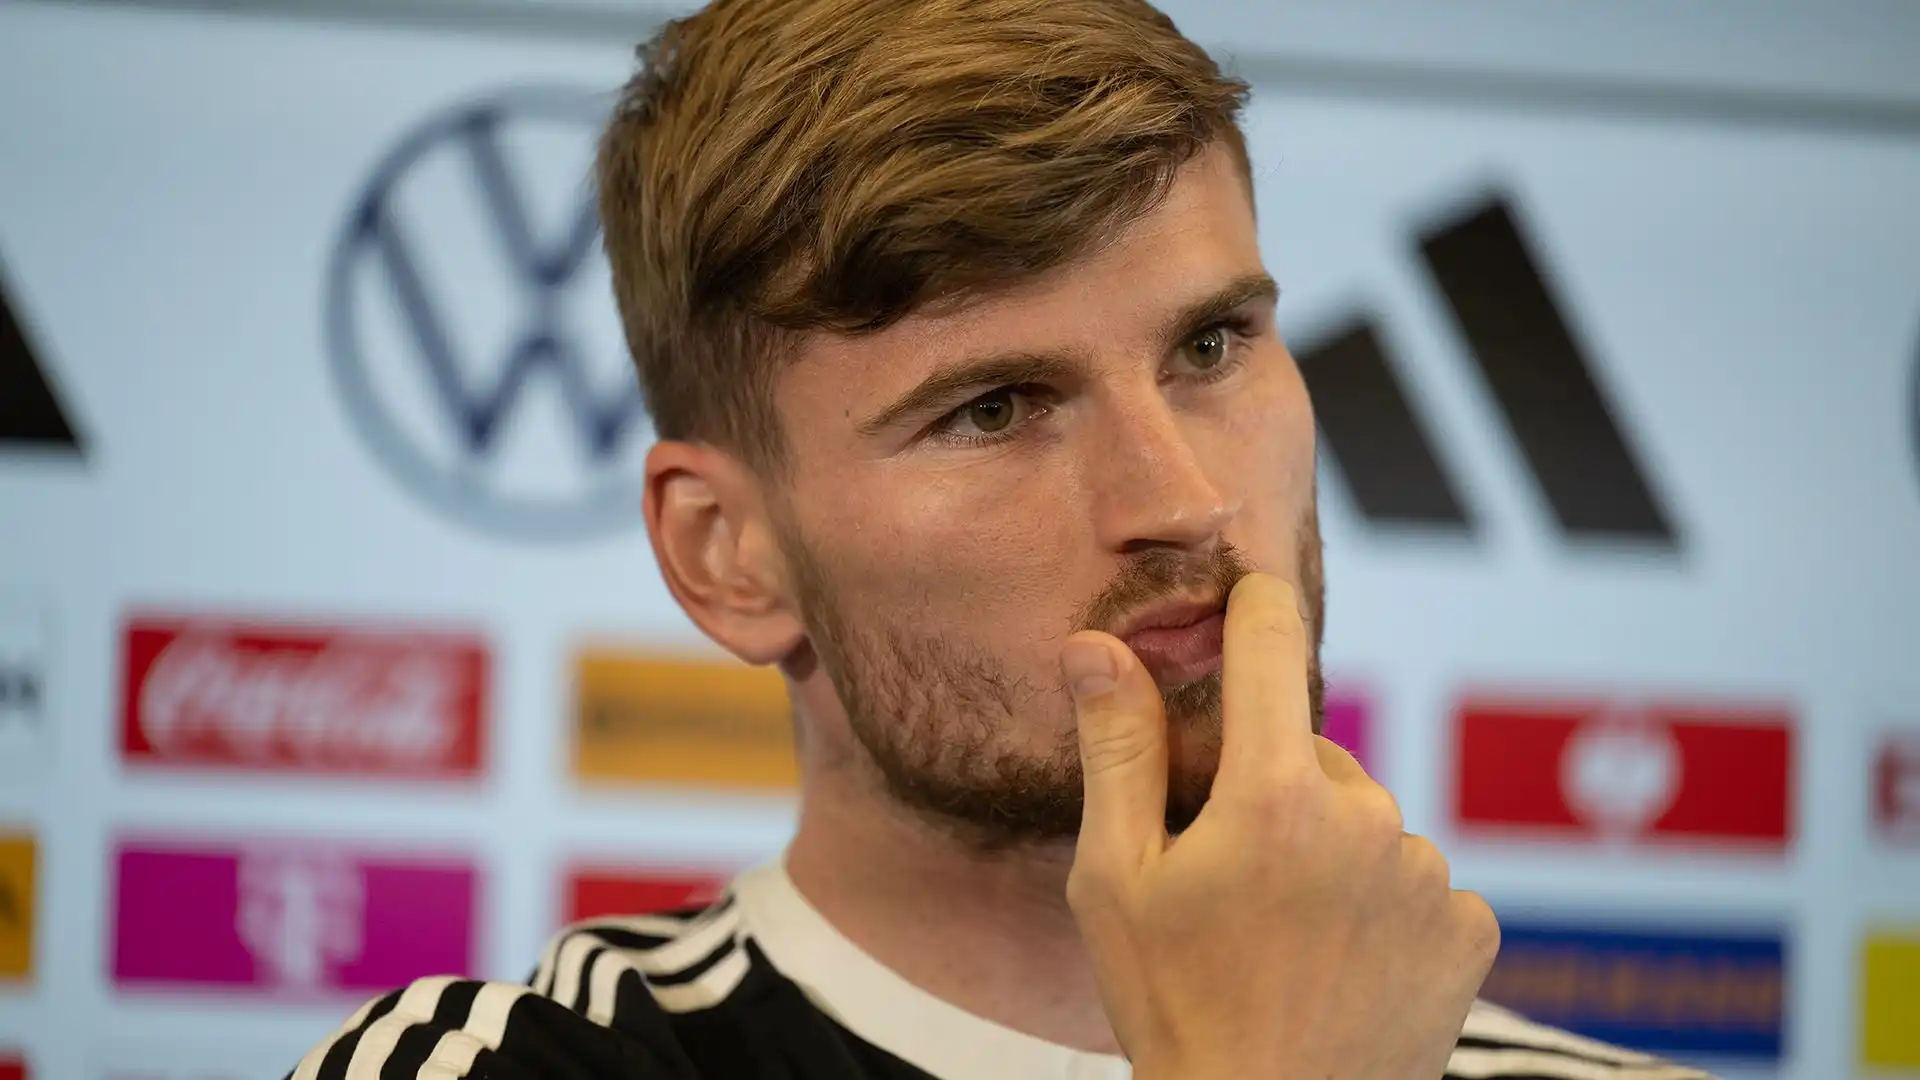 Il calciatore non è contento poichè vorrebbe tornare nella nazionale tedesca